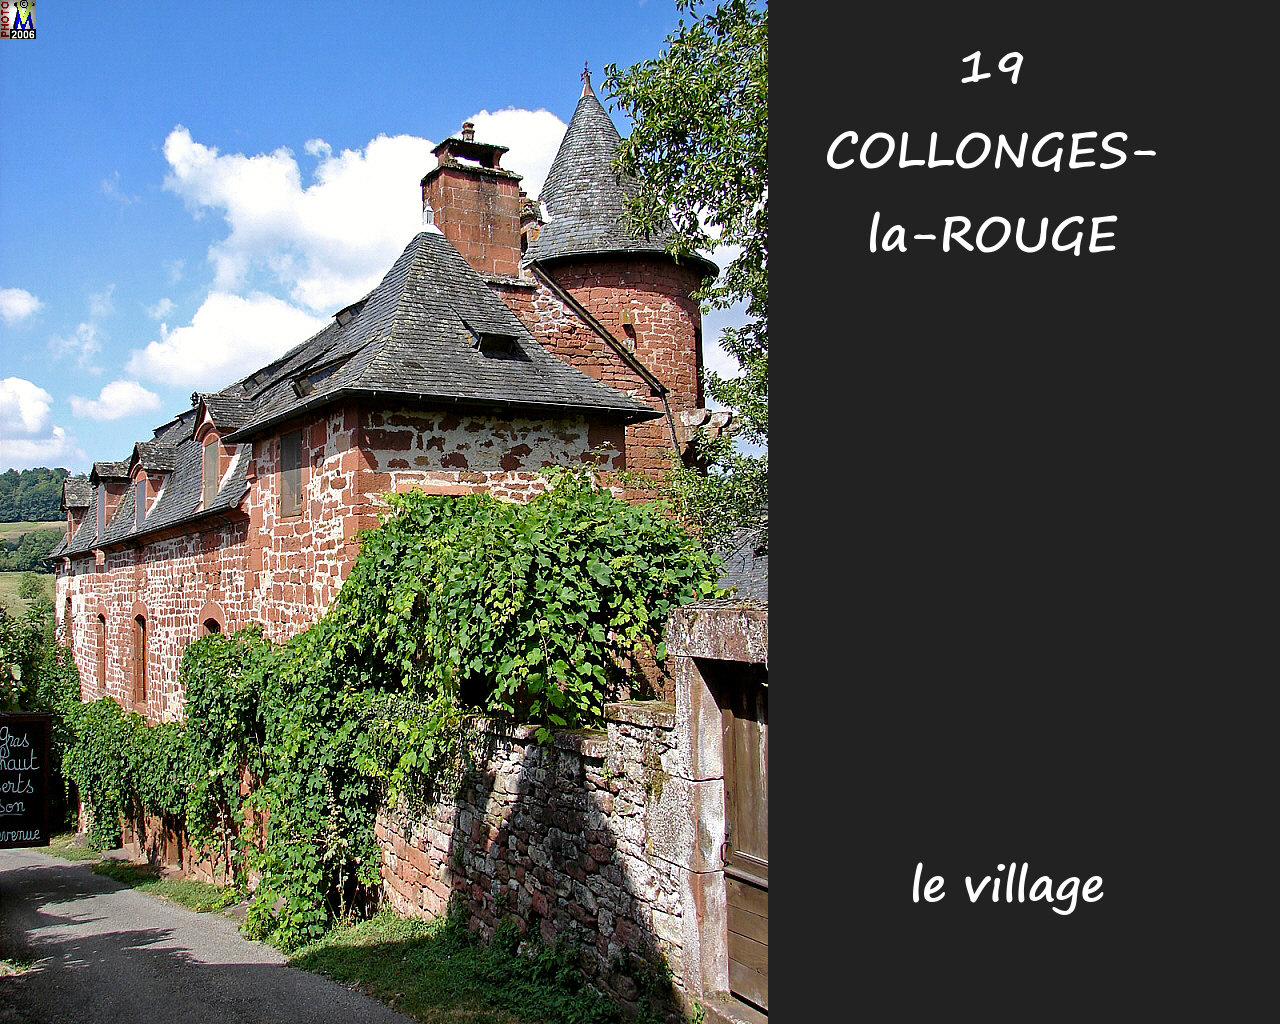 19COLLONGES-ROUGE_village_150.jpg